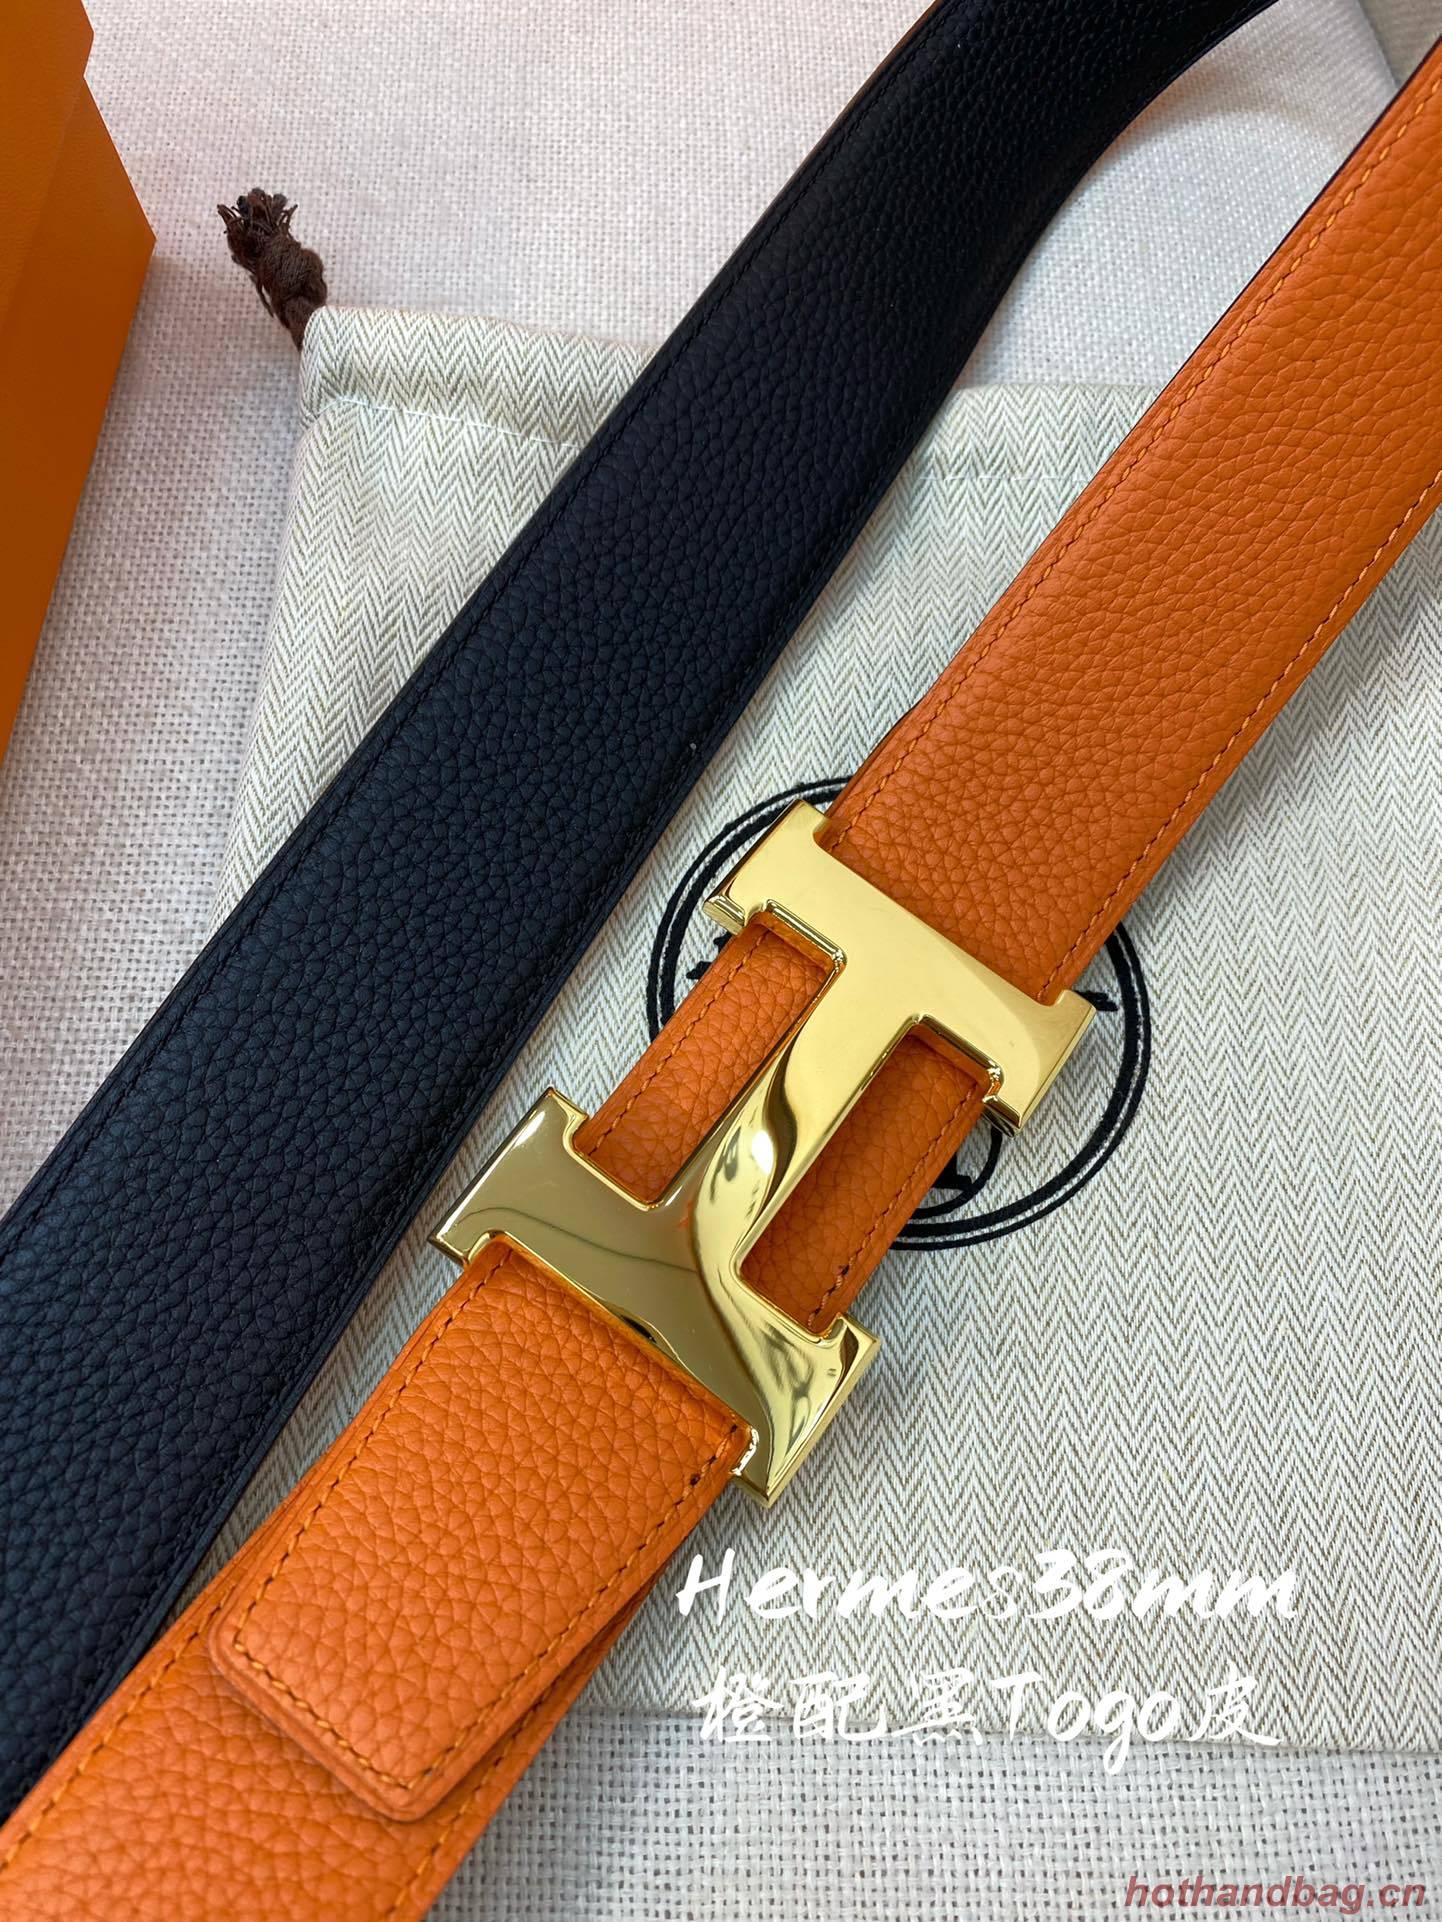 Hermes Belt 38MM HMB00104